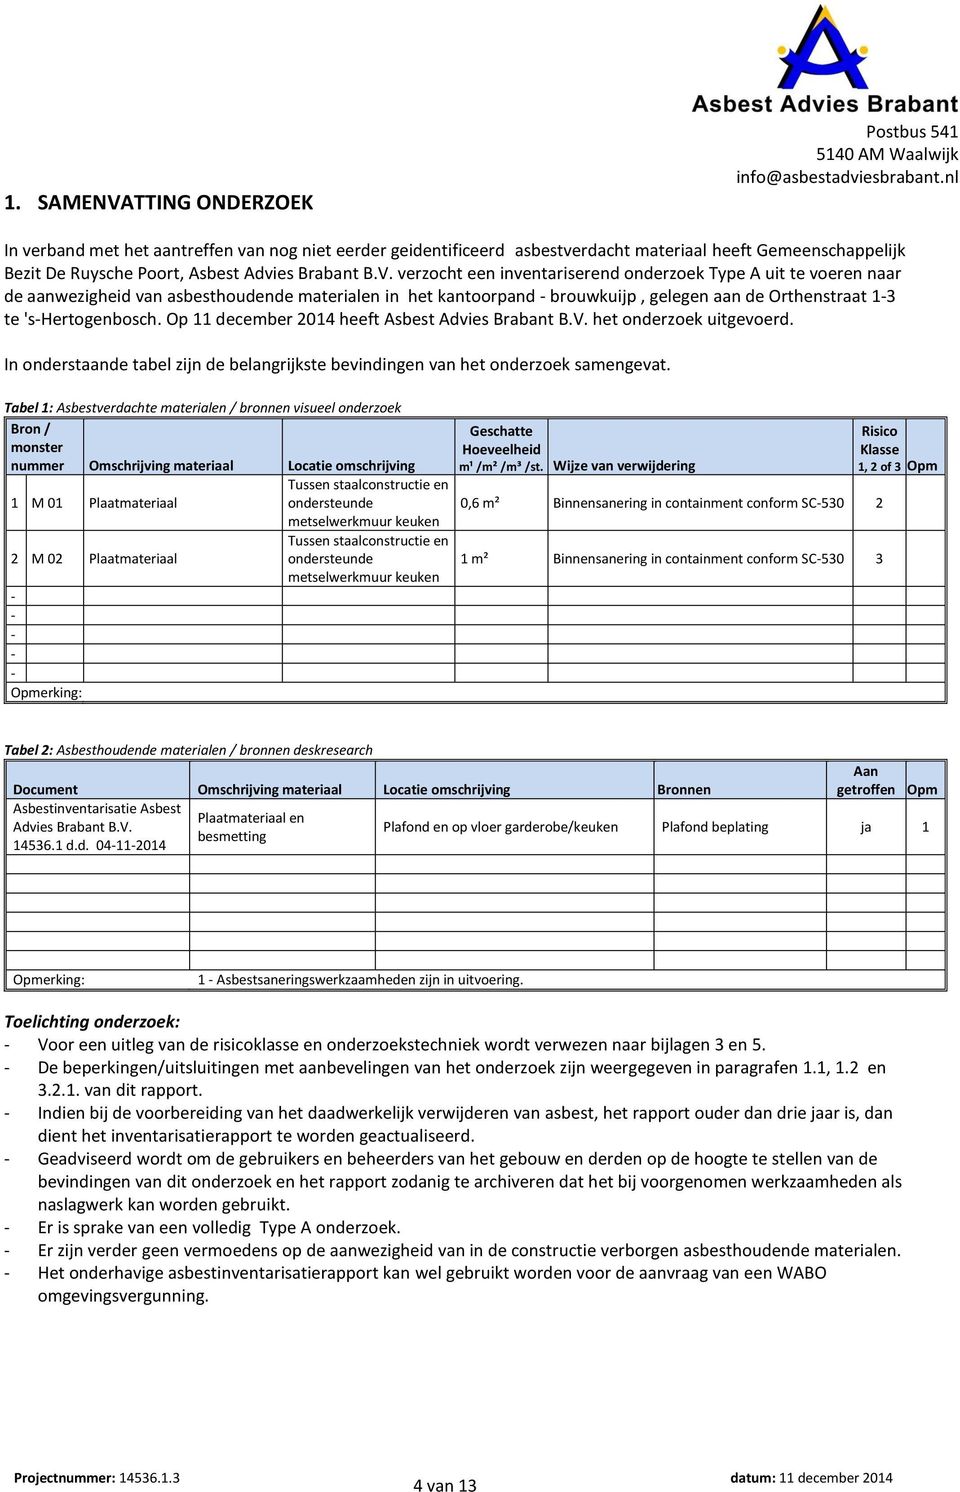 's-hertogenbosch. Op 11 december 2014 heeft Asbest Advies Brabant B.V. het onderzoek uitgevoerd. In onderstaande tabel zijn de belangrijkste bevindingen van het onderzoek samengevat.